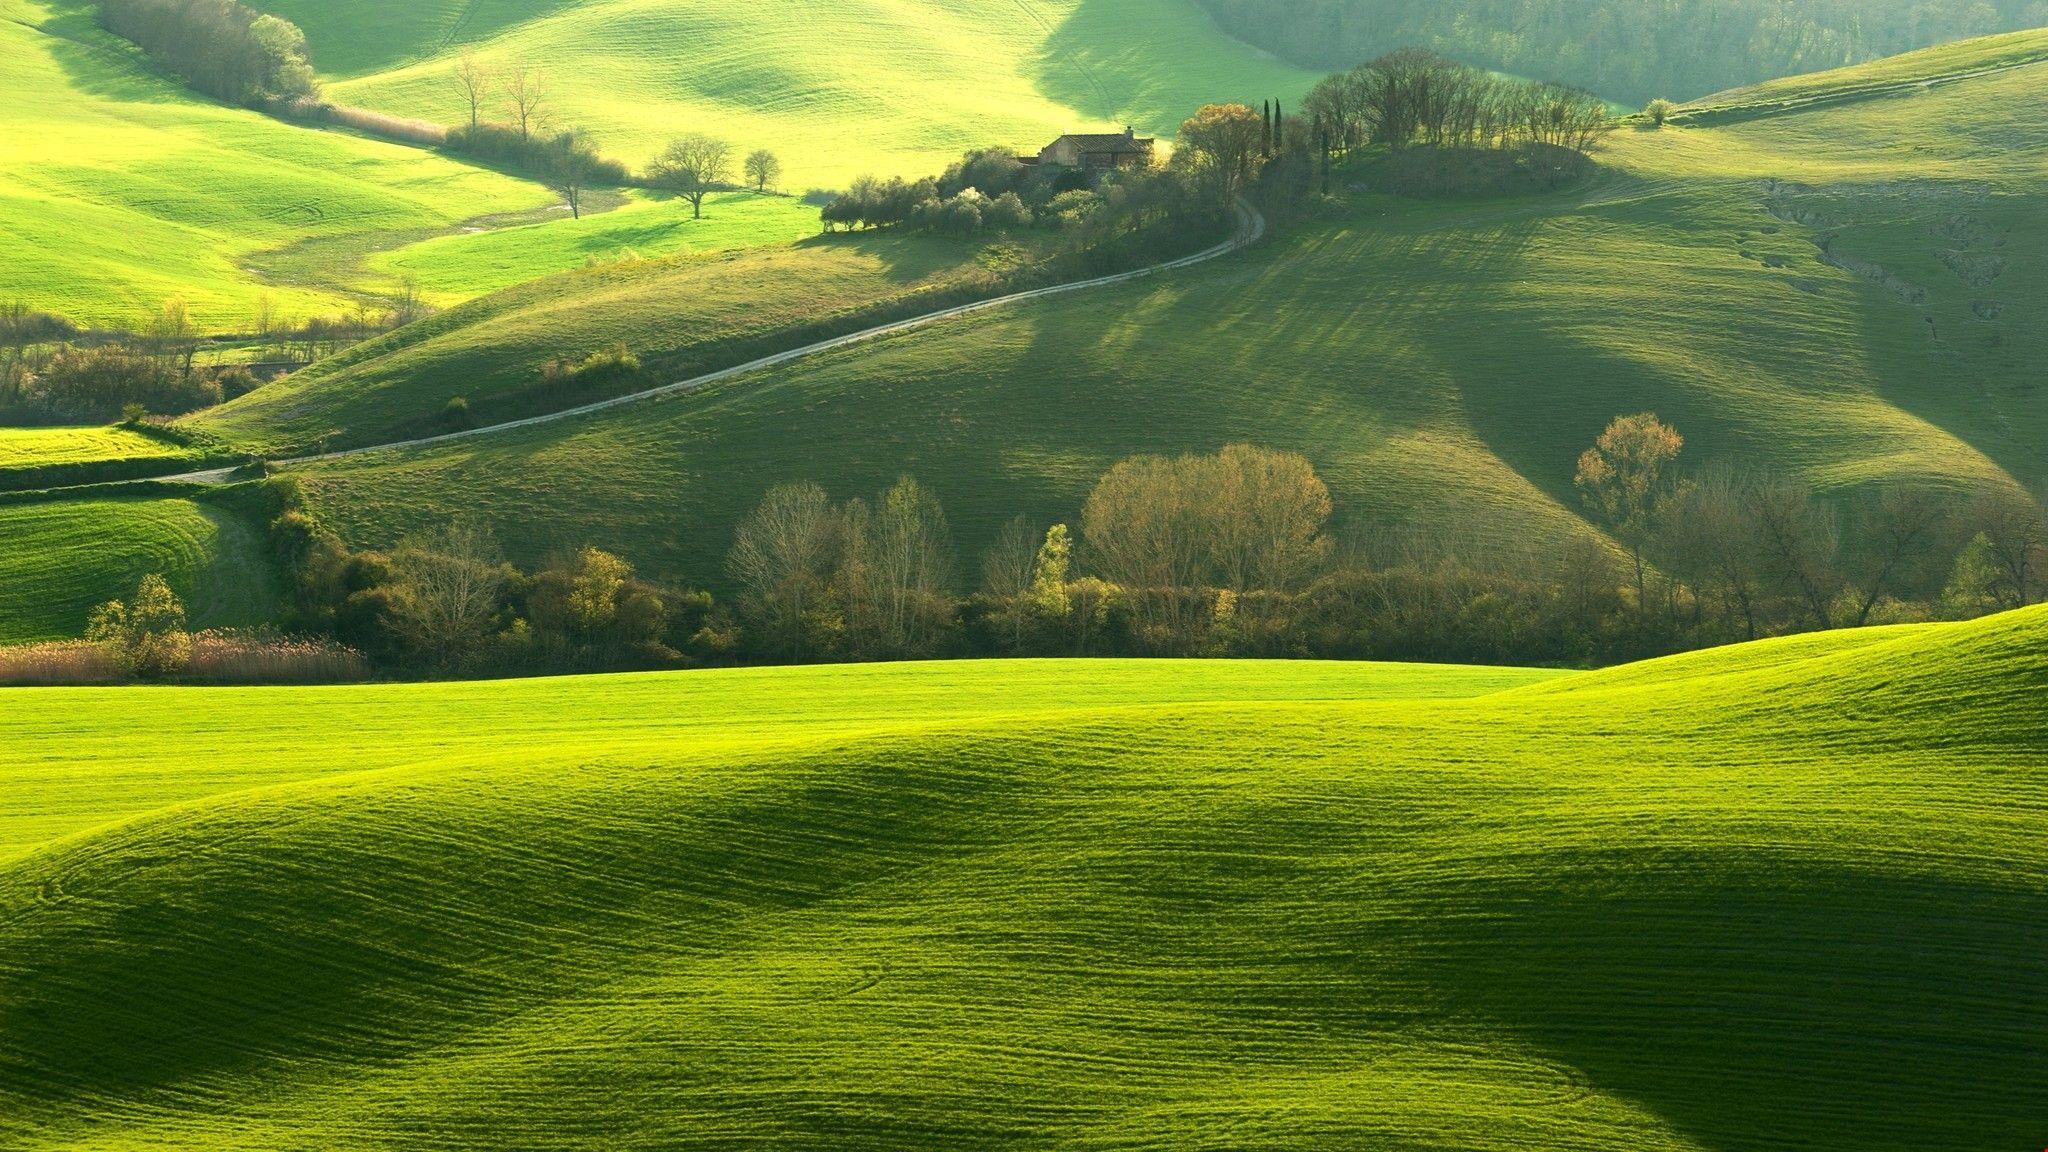 Grassland Wallpapers - Top Free Grassland Backgrounds - WallpaperAccess